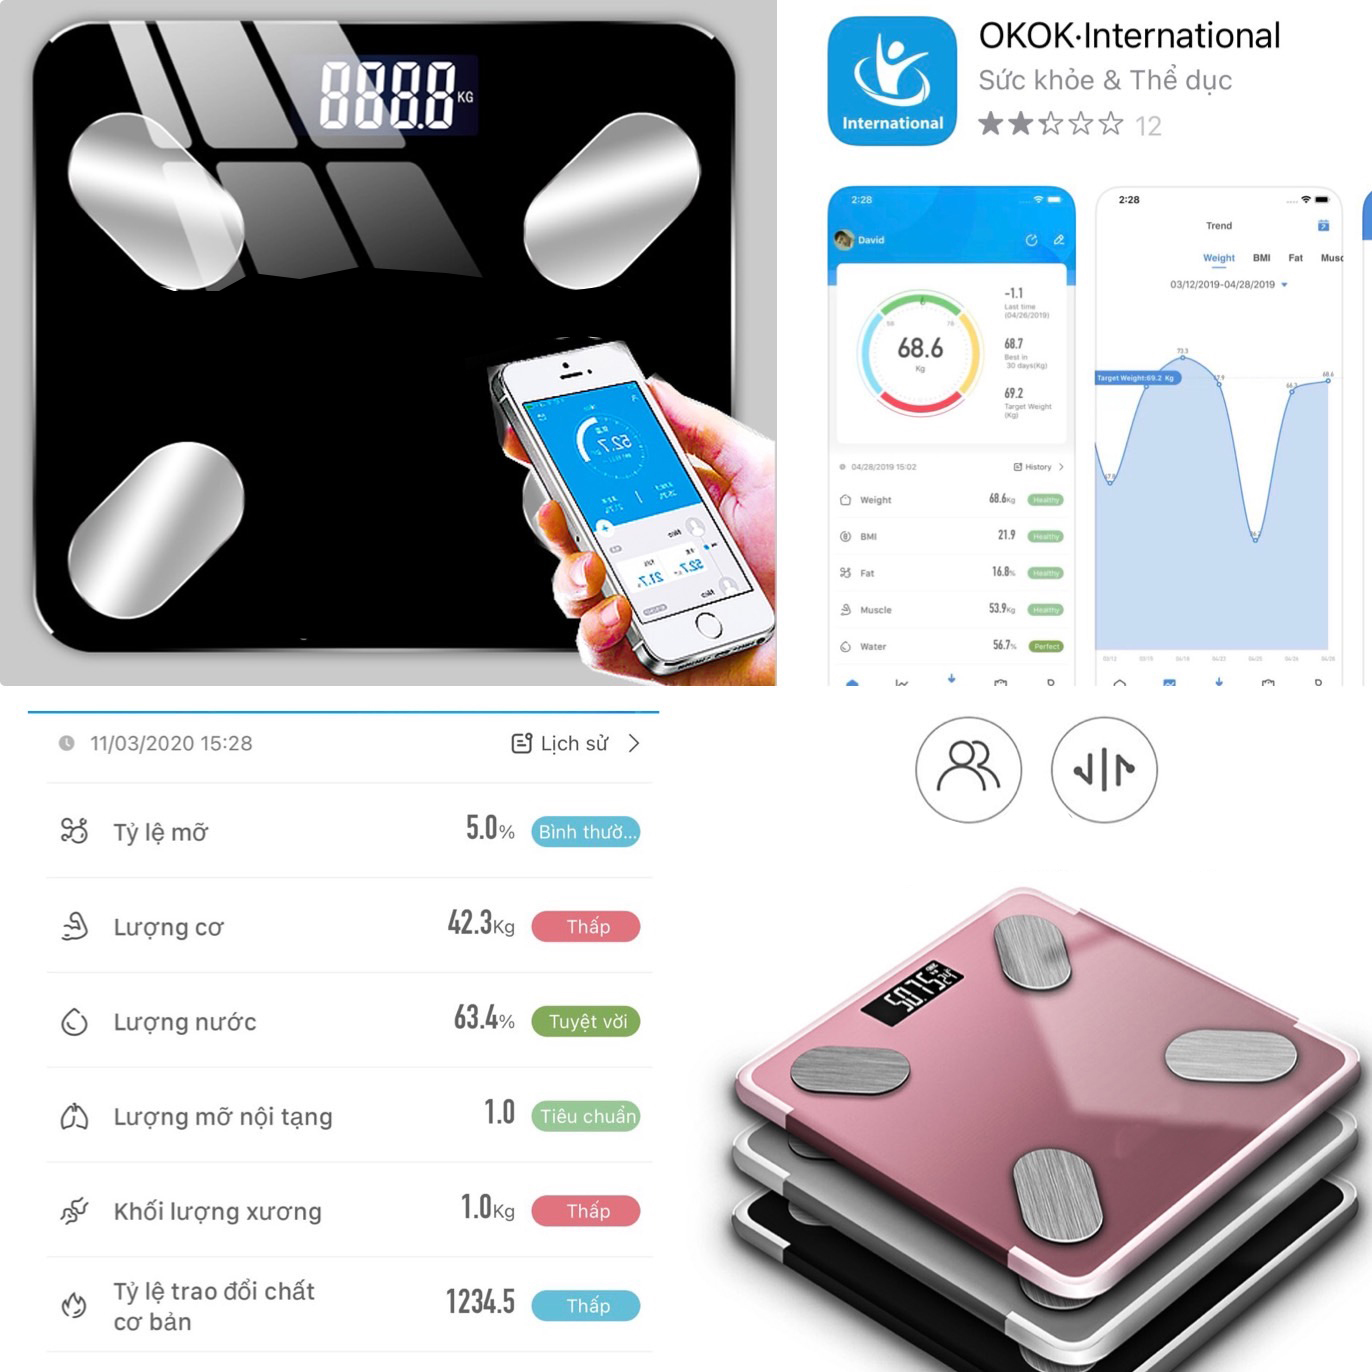 Cân sức khỏe điện tử độ chính xác cao , Cân sức khỏe mặt kính cường lực đo và phân tích chỉ số cơ thế kết nối bluetooth qua App , chịu tải trọng tới 180kg, cân phân tích đo 11 chỉ số cơ thể.